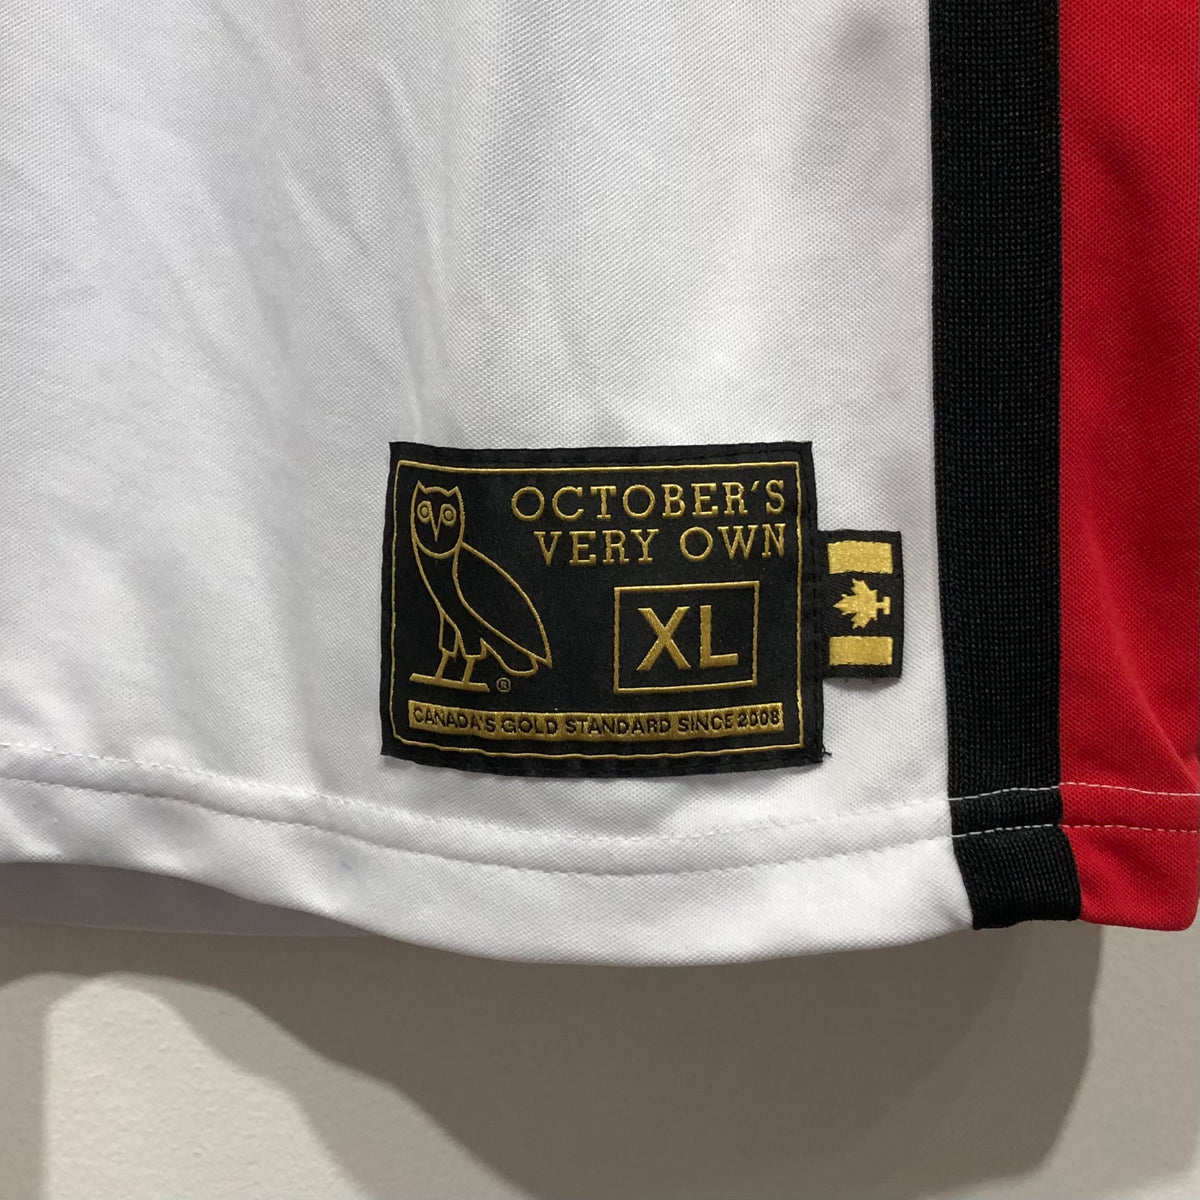 OVO Basketball Jersey XL – Laundry